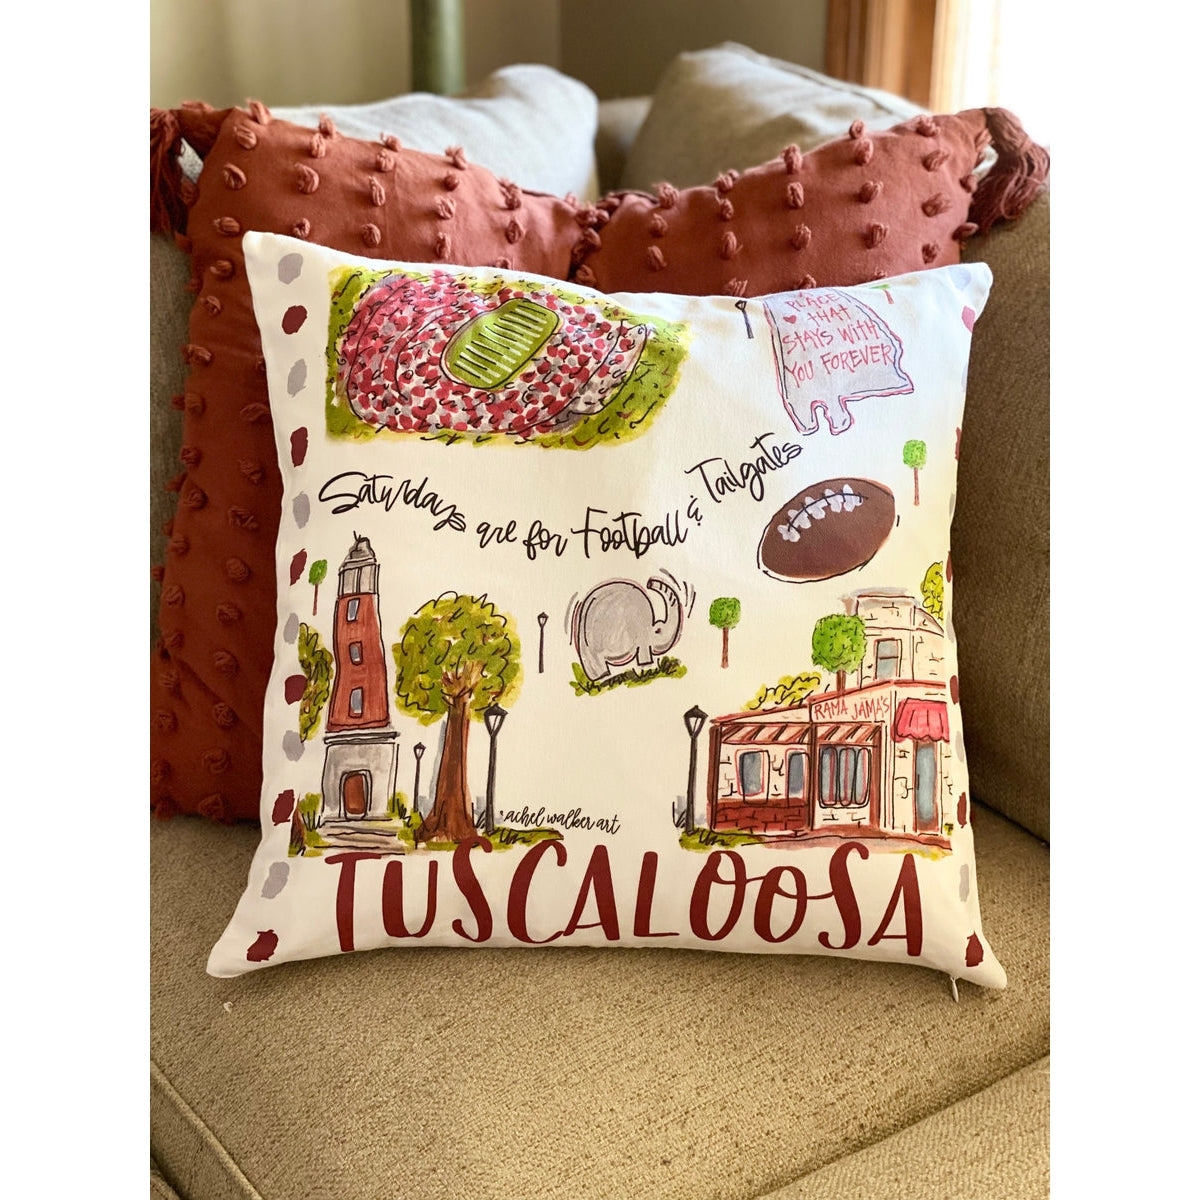 Tuscaloosa Pillow